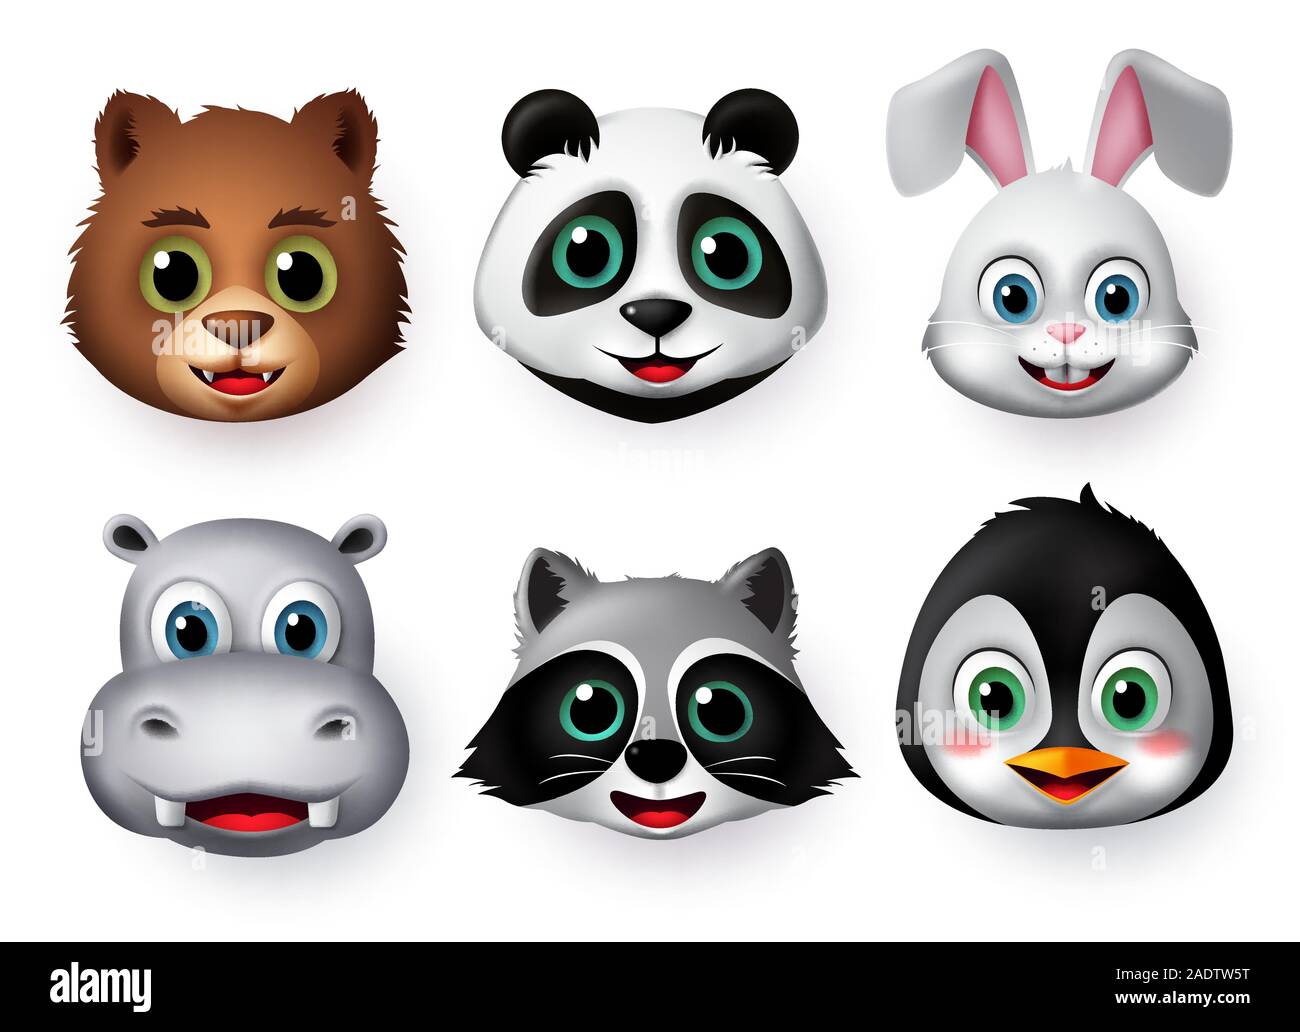 Panda faccia emoticon set di vettore. Gli Emoji di orso panda testa di animale arrabbiato, spaventata, gridando e sorpresa le espressioni facciali isolato. Illustrazione Vettoriale